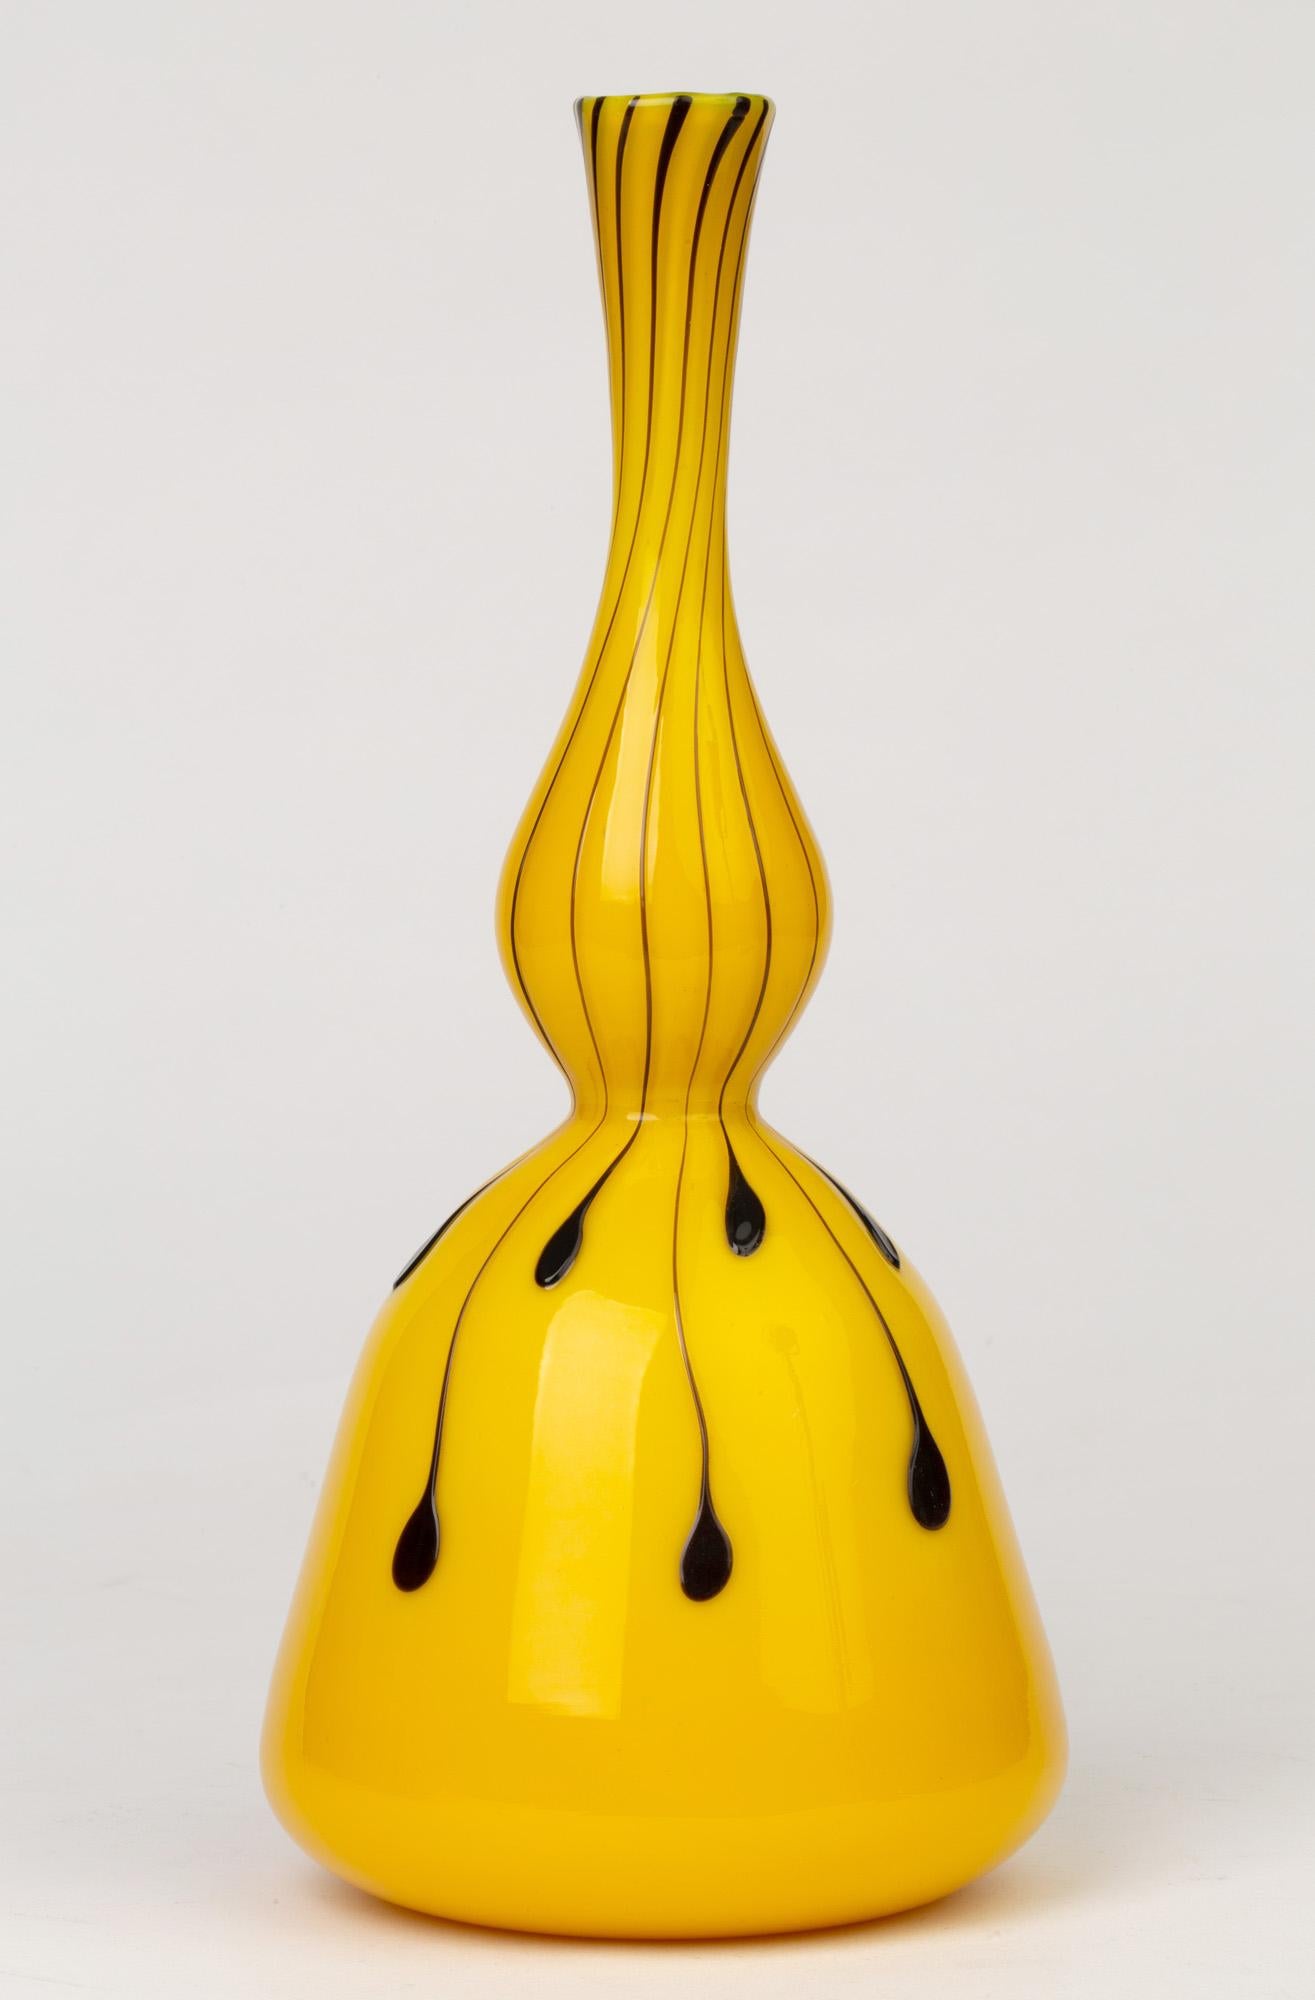 Eine atemberaubende italienische Vase aus mundgeblasenem Muranoglas aus gelbem Glas mit aufgetragenen violetten Glastropfen, die Fratelli Toso zugeschrieben wird und aus der Zeit um 1950 stammt. Die hammerförmige Vase hat einen breiten, abgerundeten